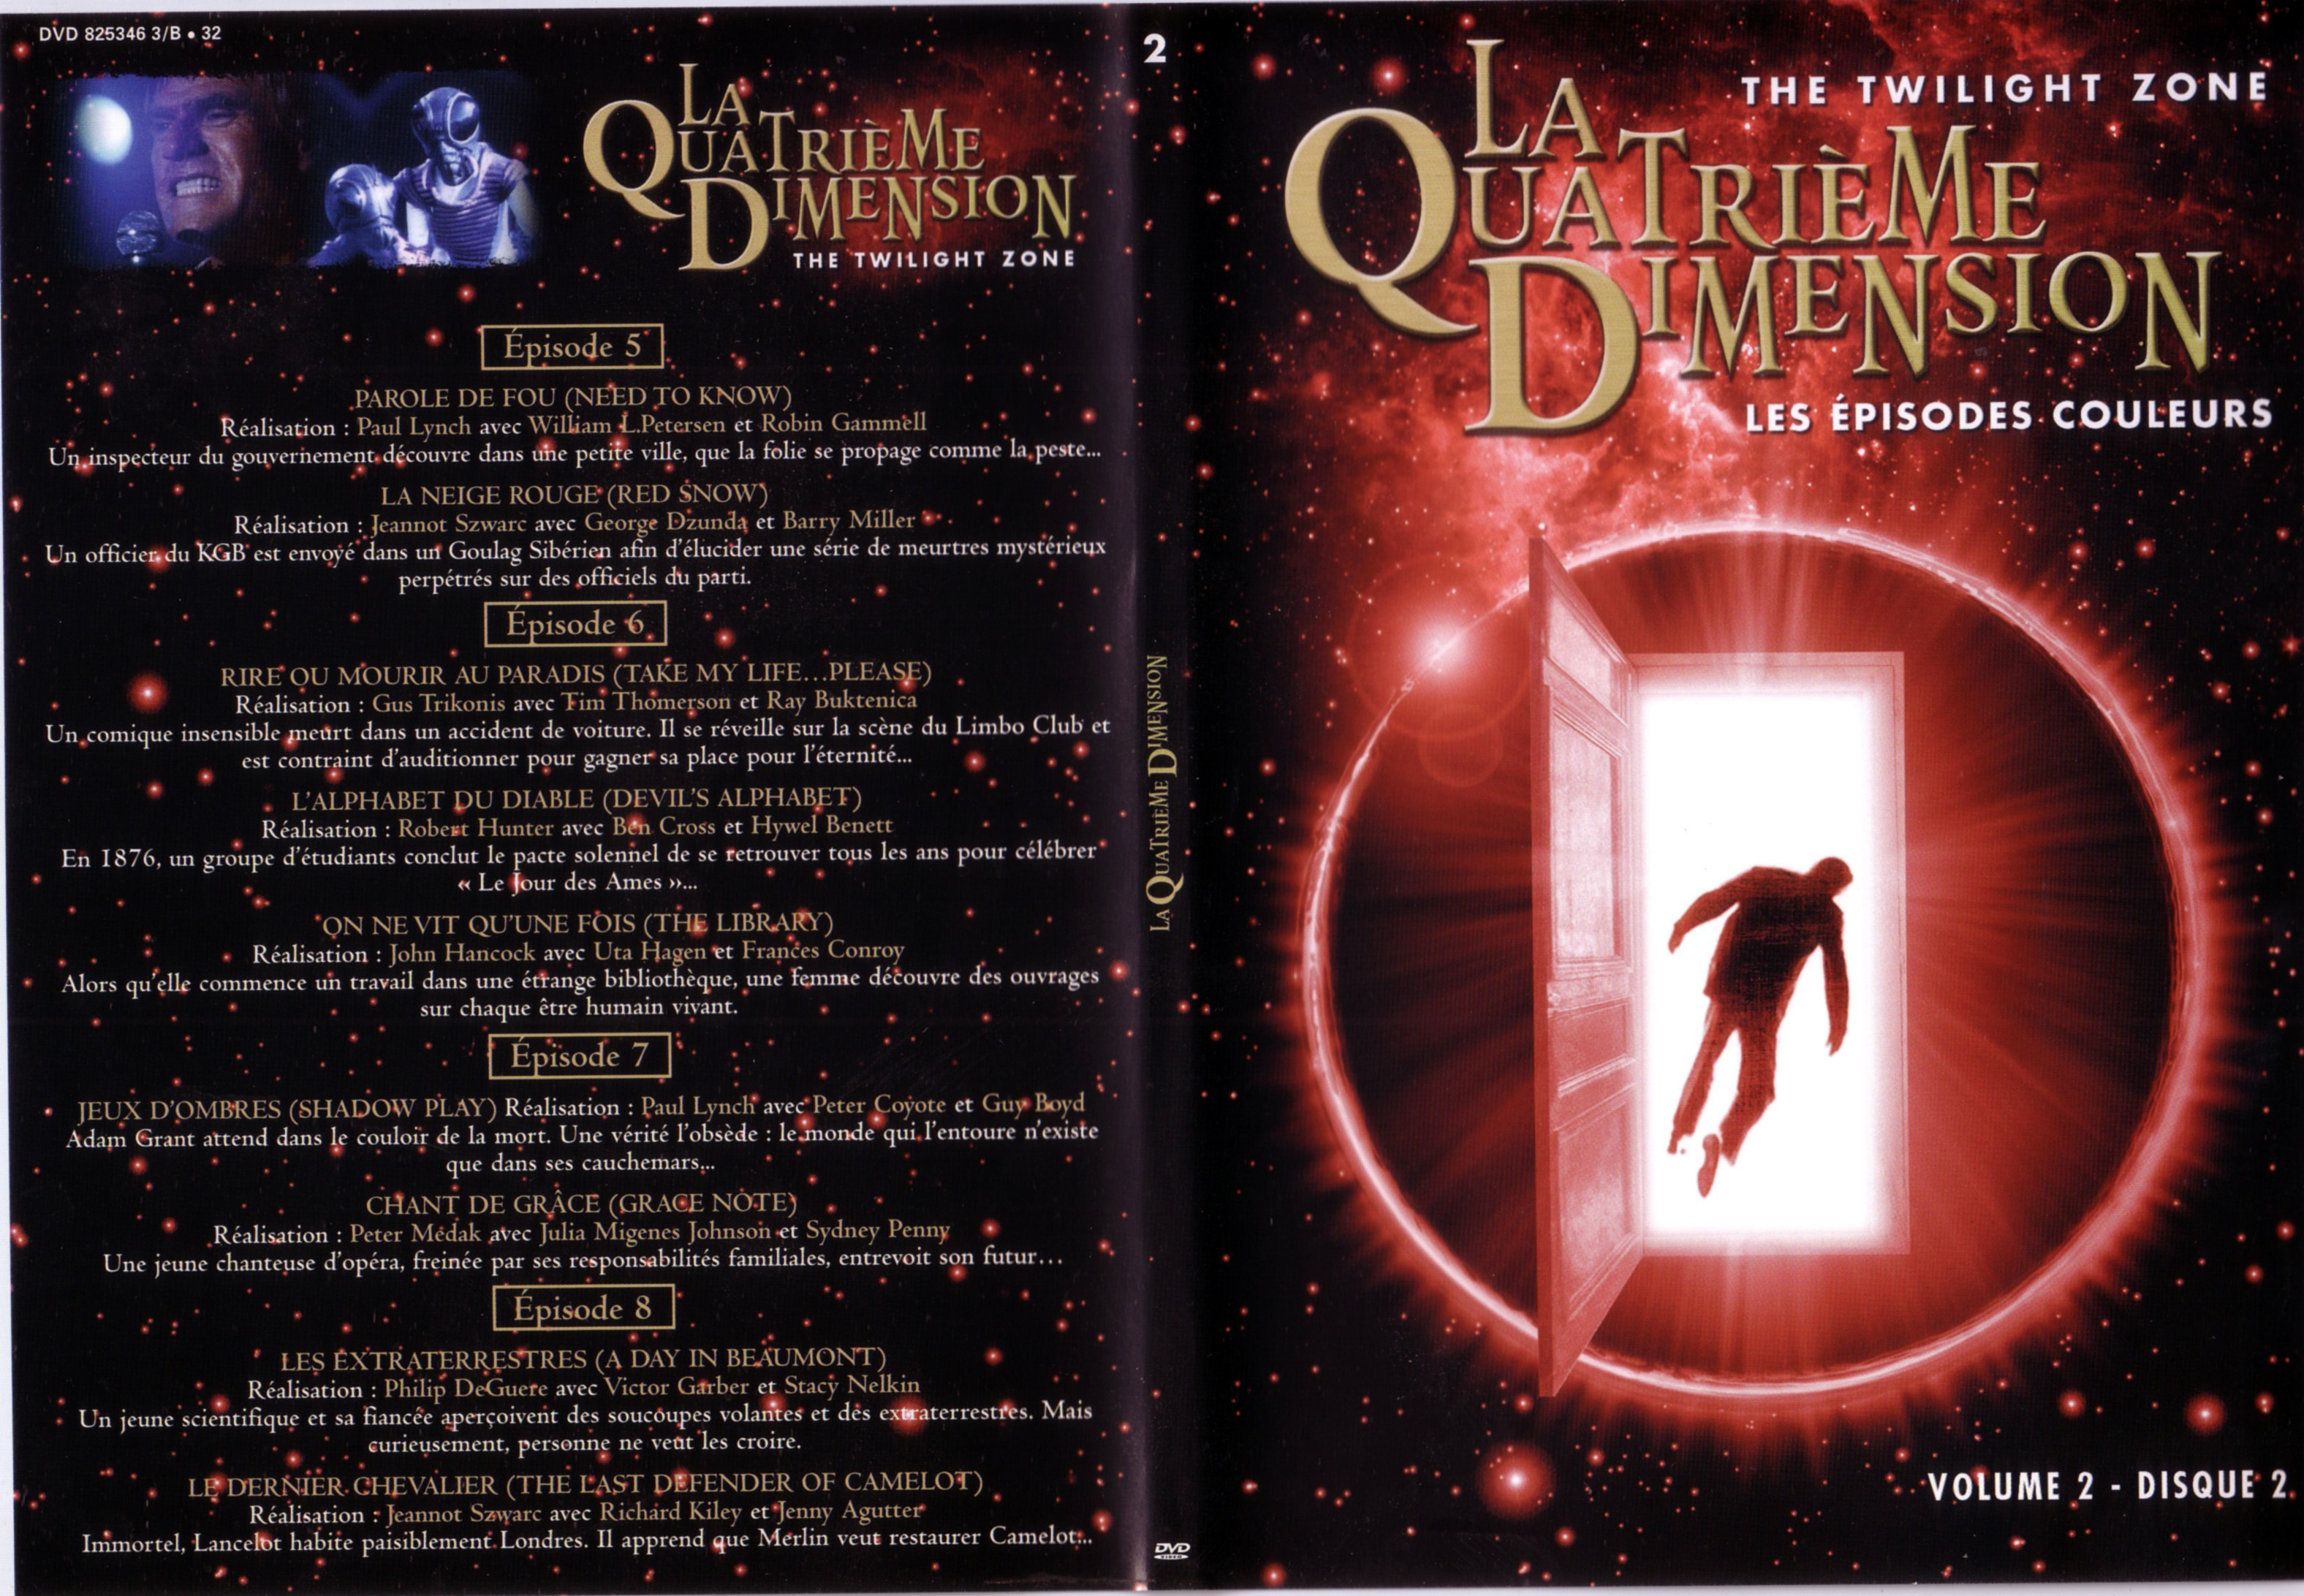 Jaquette DVD La quatrime dimension - Episodes couleurs vol 2 DVD 2